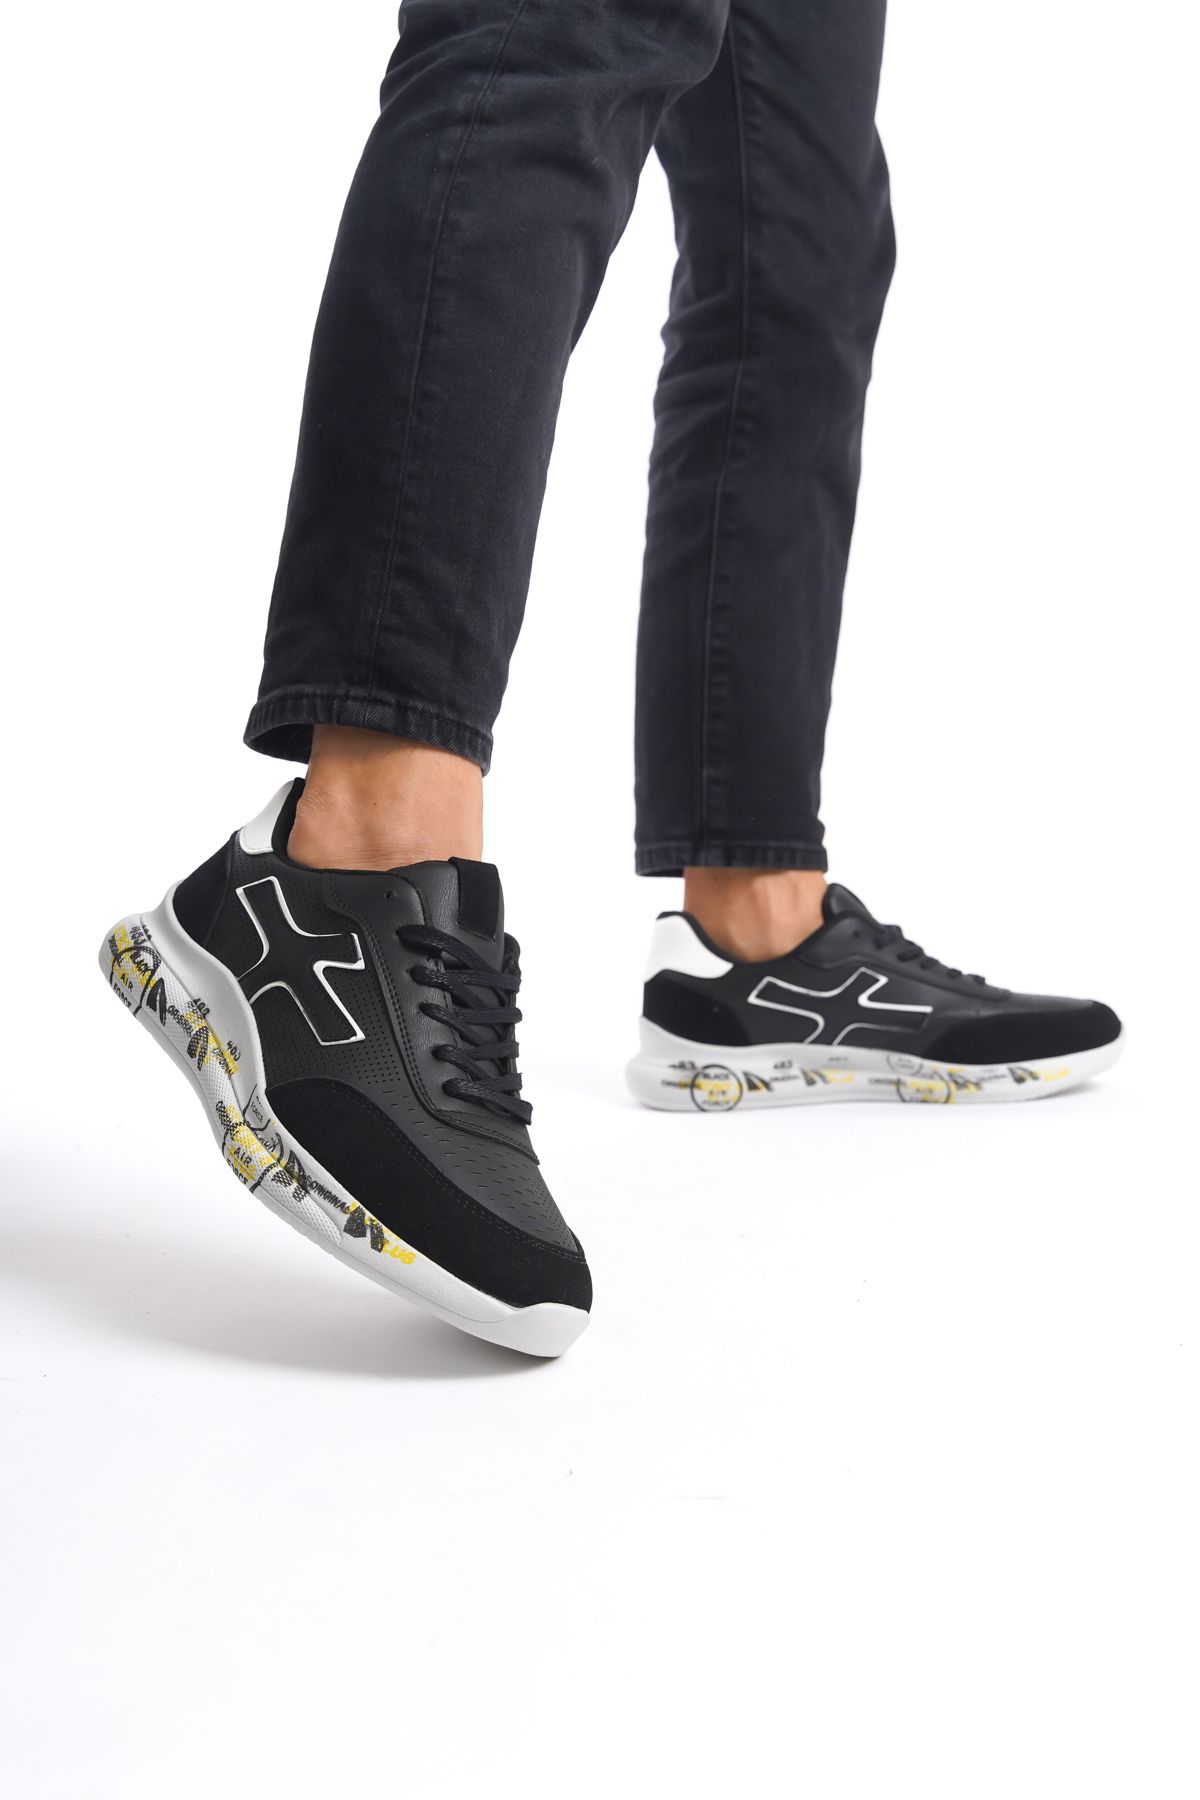 Daxtors D0020 Günlük Ortopedik Garantili Erkek Sneaker Spor Ayakkabı